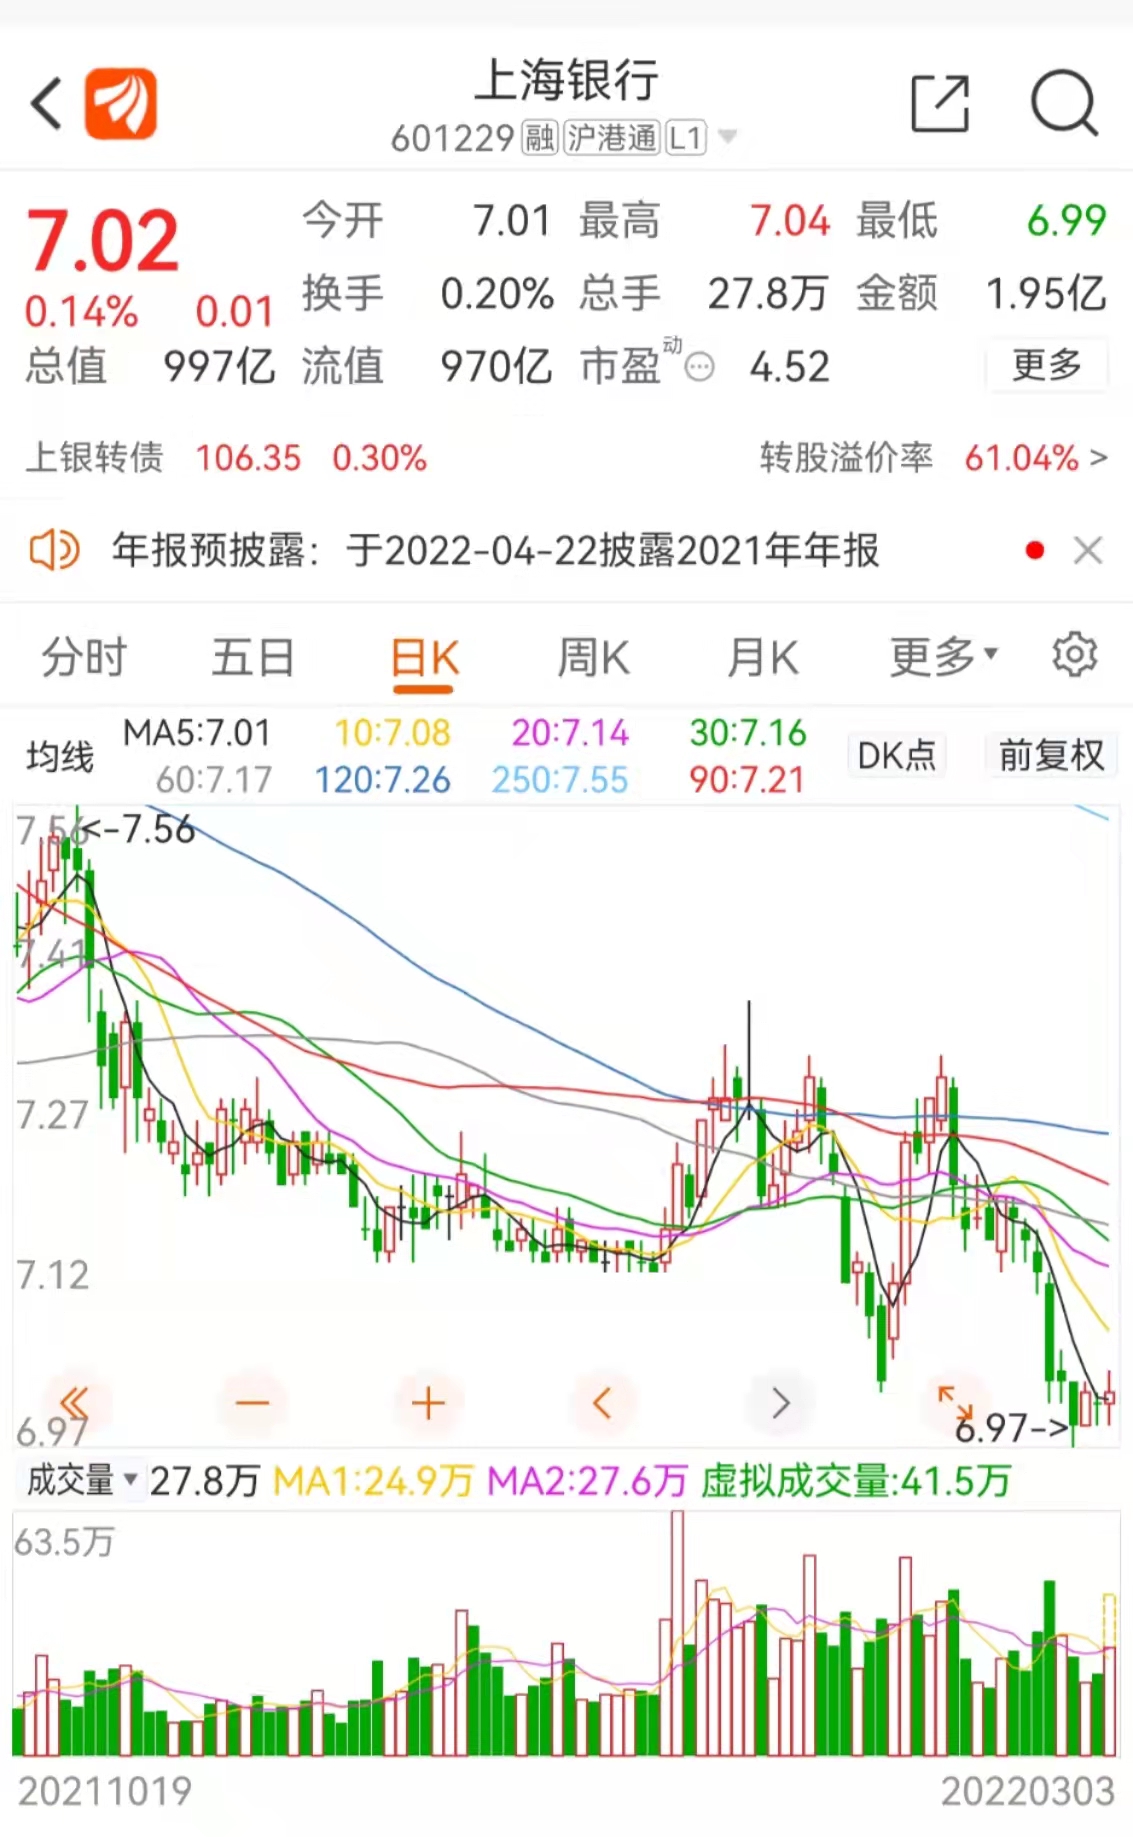 上海银行业绩预喜，去年营收净利双增，但不良率连续三年攀升